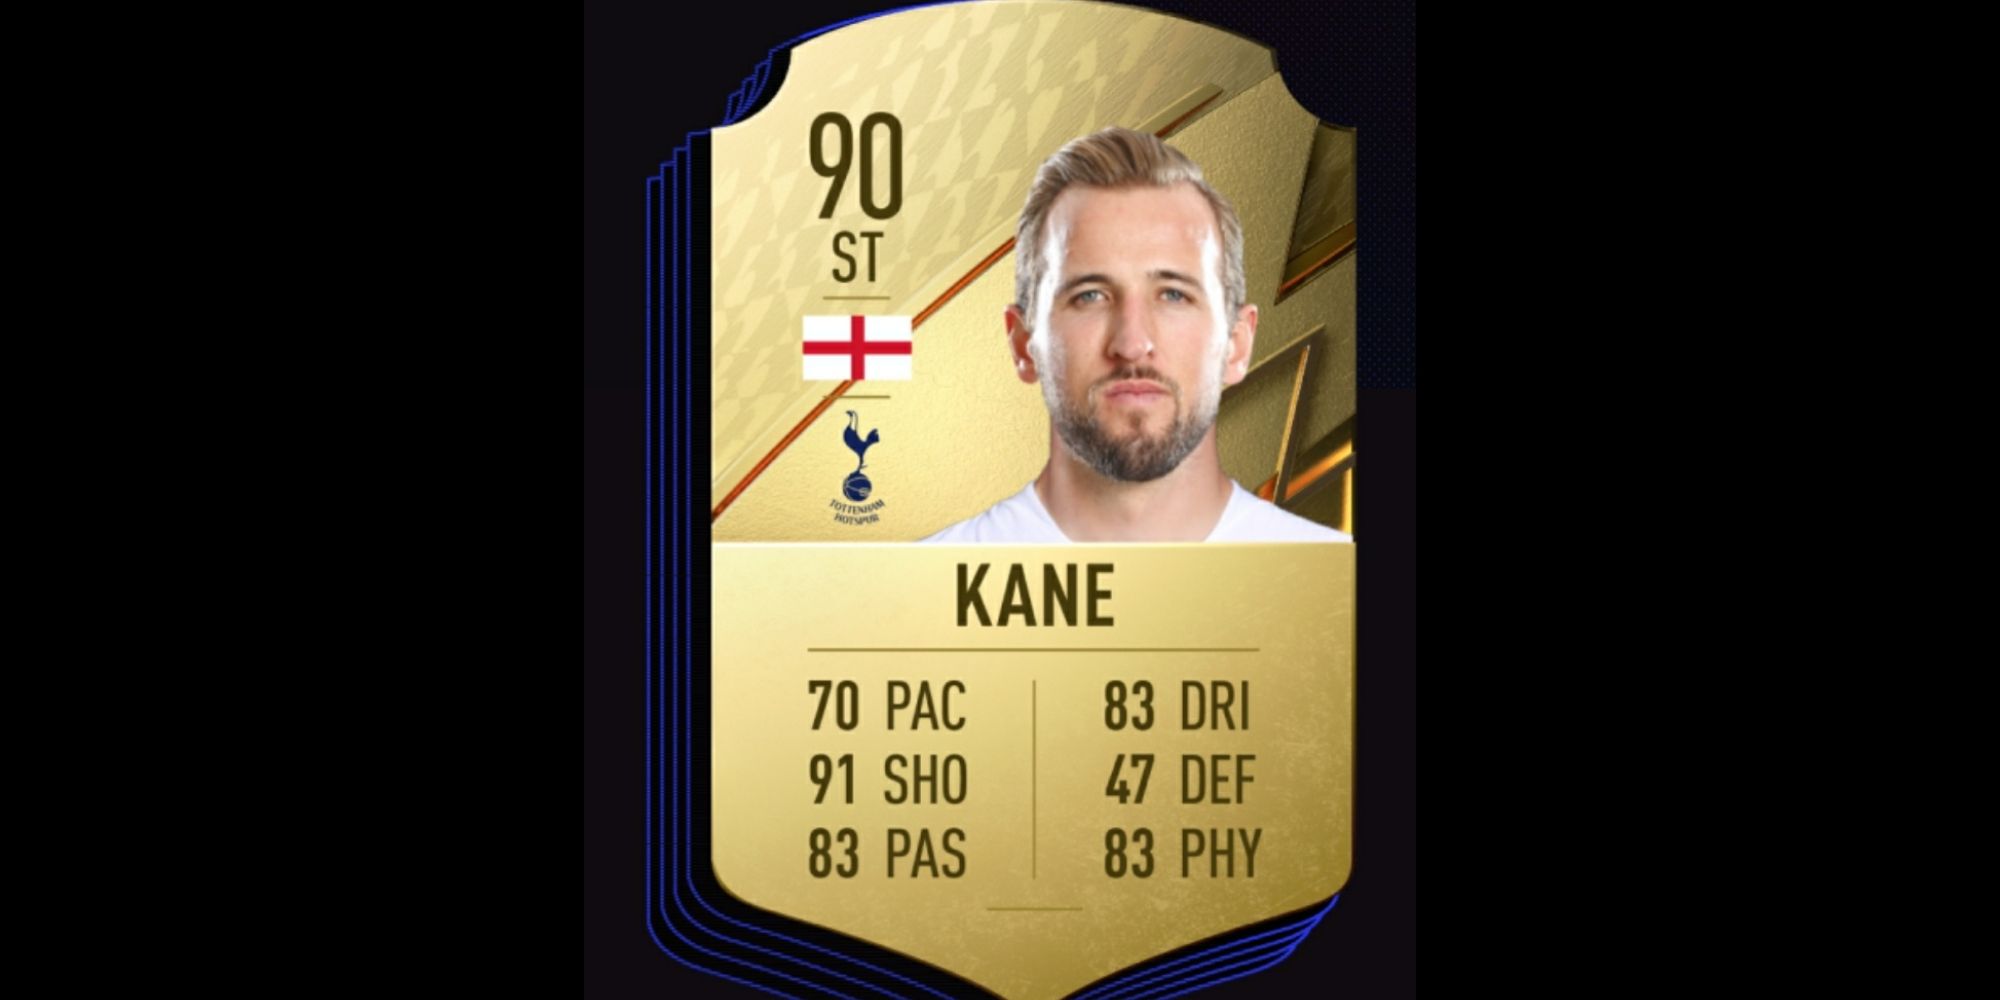 Kane card in FIFA 22